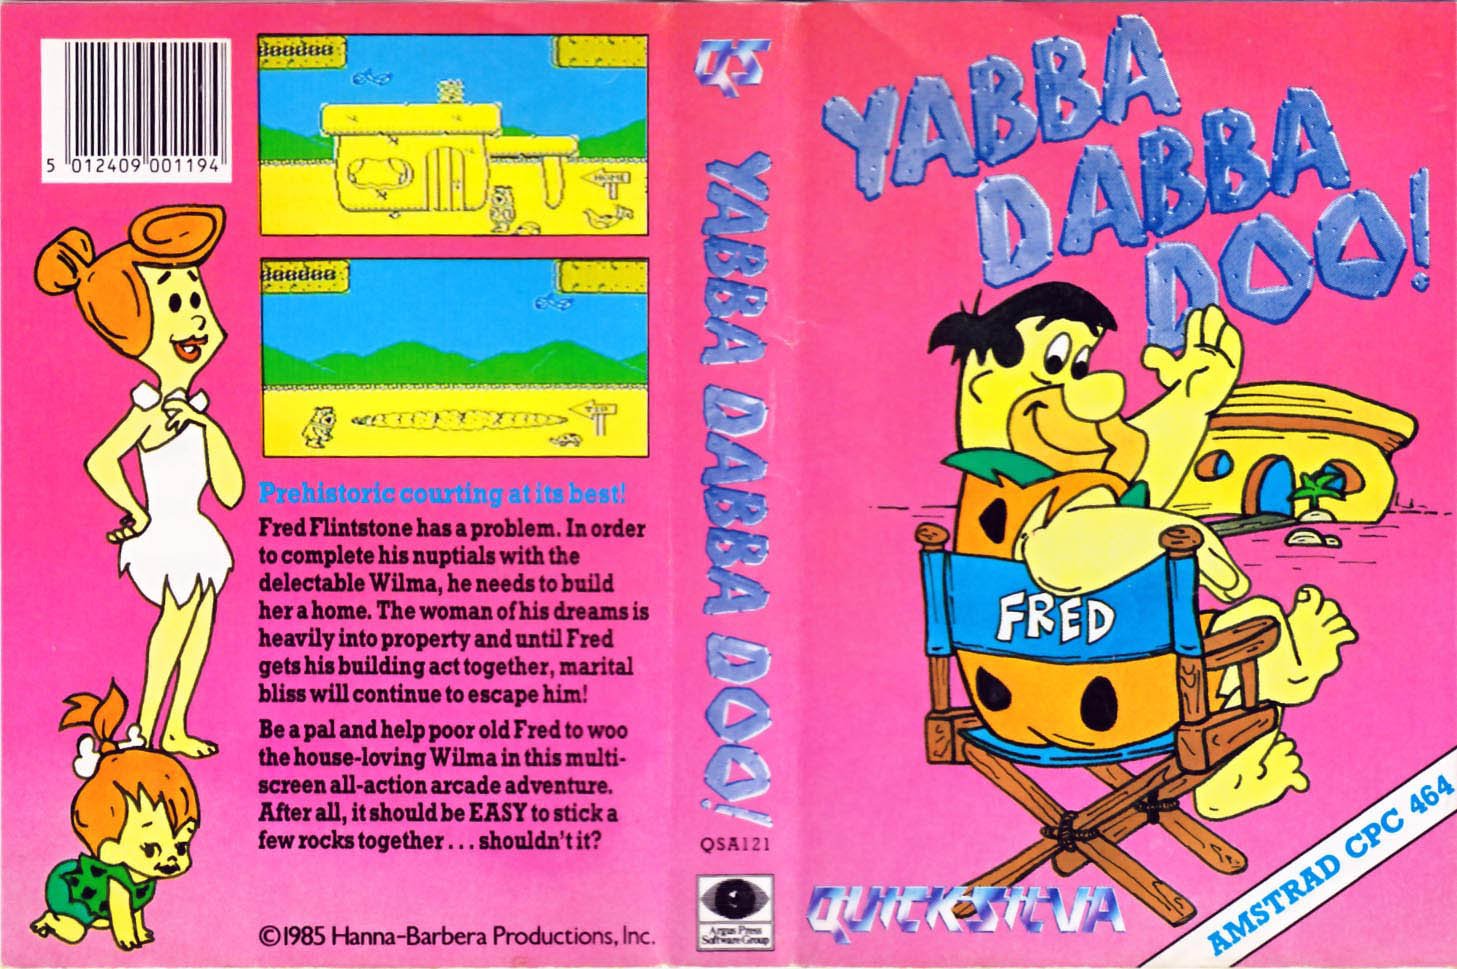 Caratula de Yabba Dabba Doo!/The Flintstones, Quicksilva para Amstrad CPC